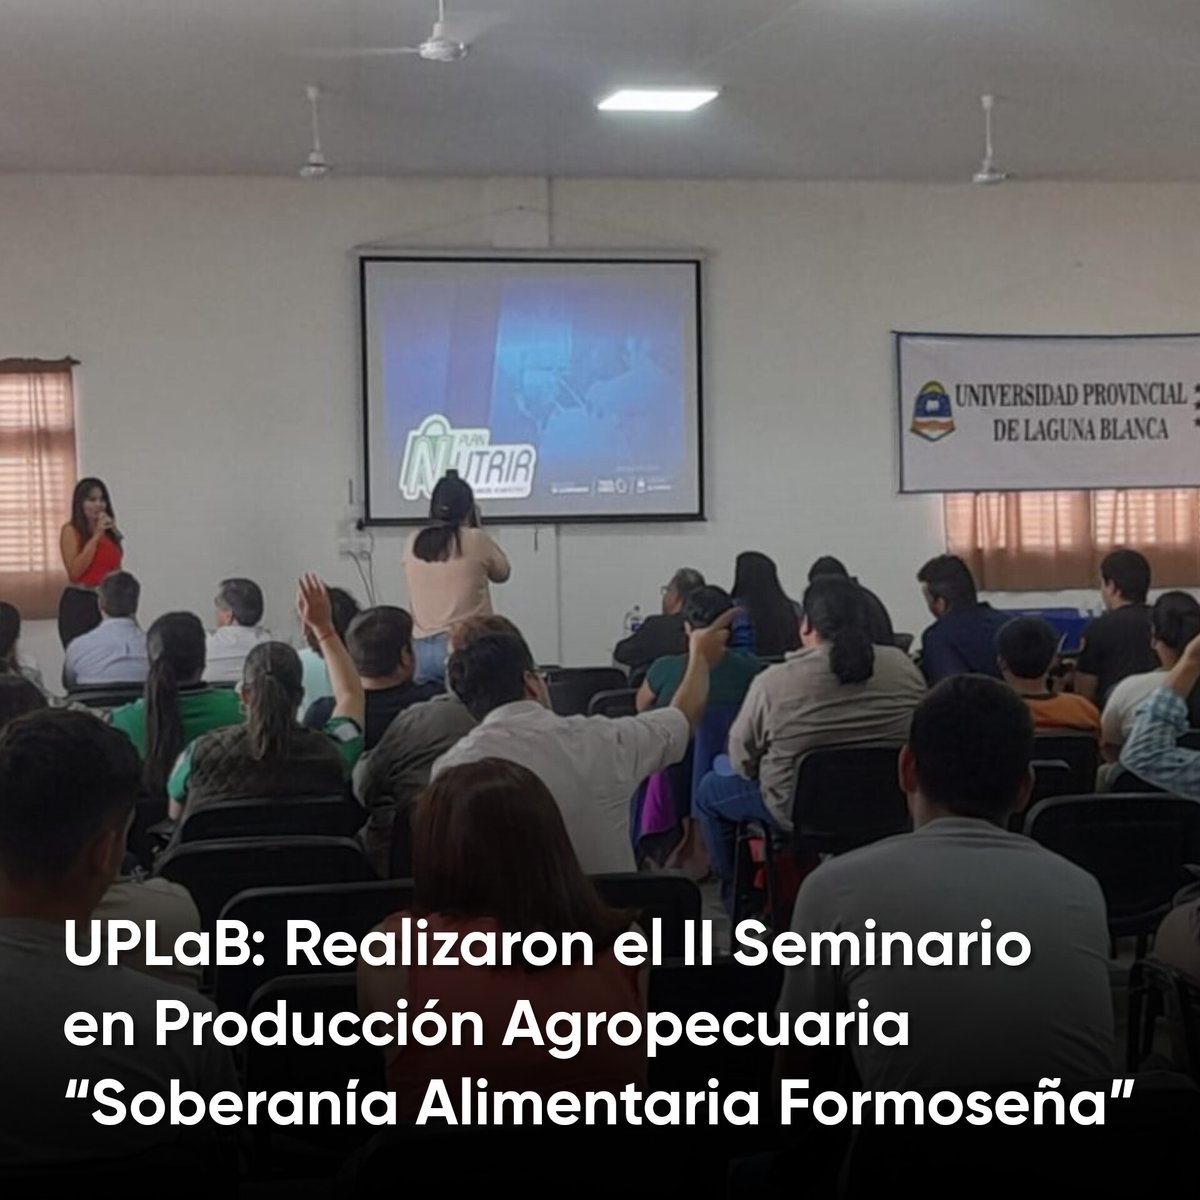 Este miércoles 18, en la sede de la Universidad Provincial de Laguna Blanca (UPLaB) se llevó a cabo el II Seminario en Producción Agropecuaria “Soberanía Alimentaria Formoseña”.